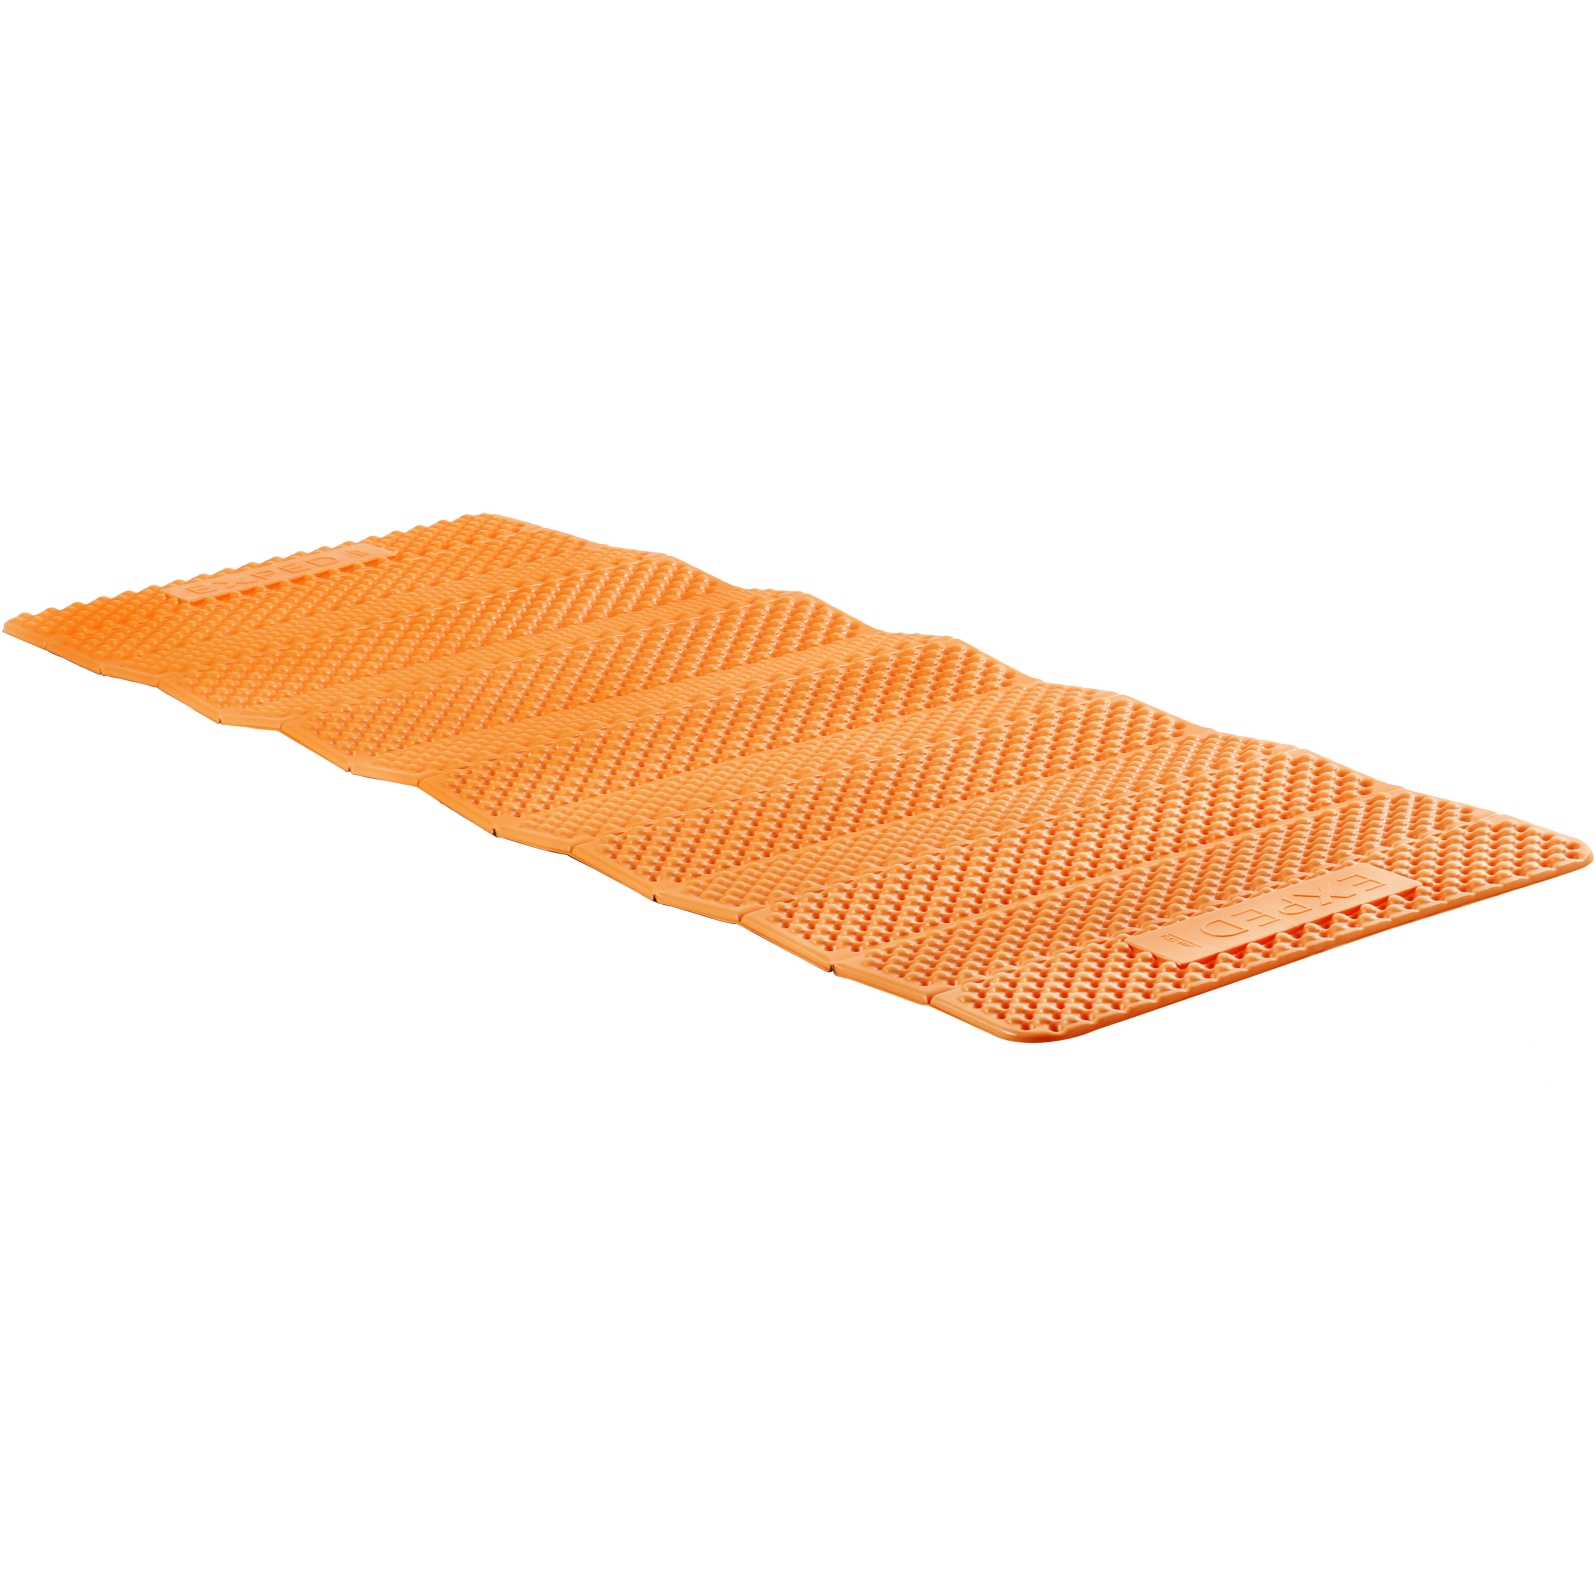 Productfoto van Exped FlexMat Isolatiemat - LW - charcoal grey/orange